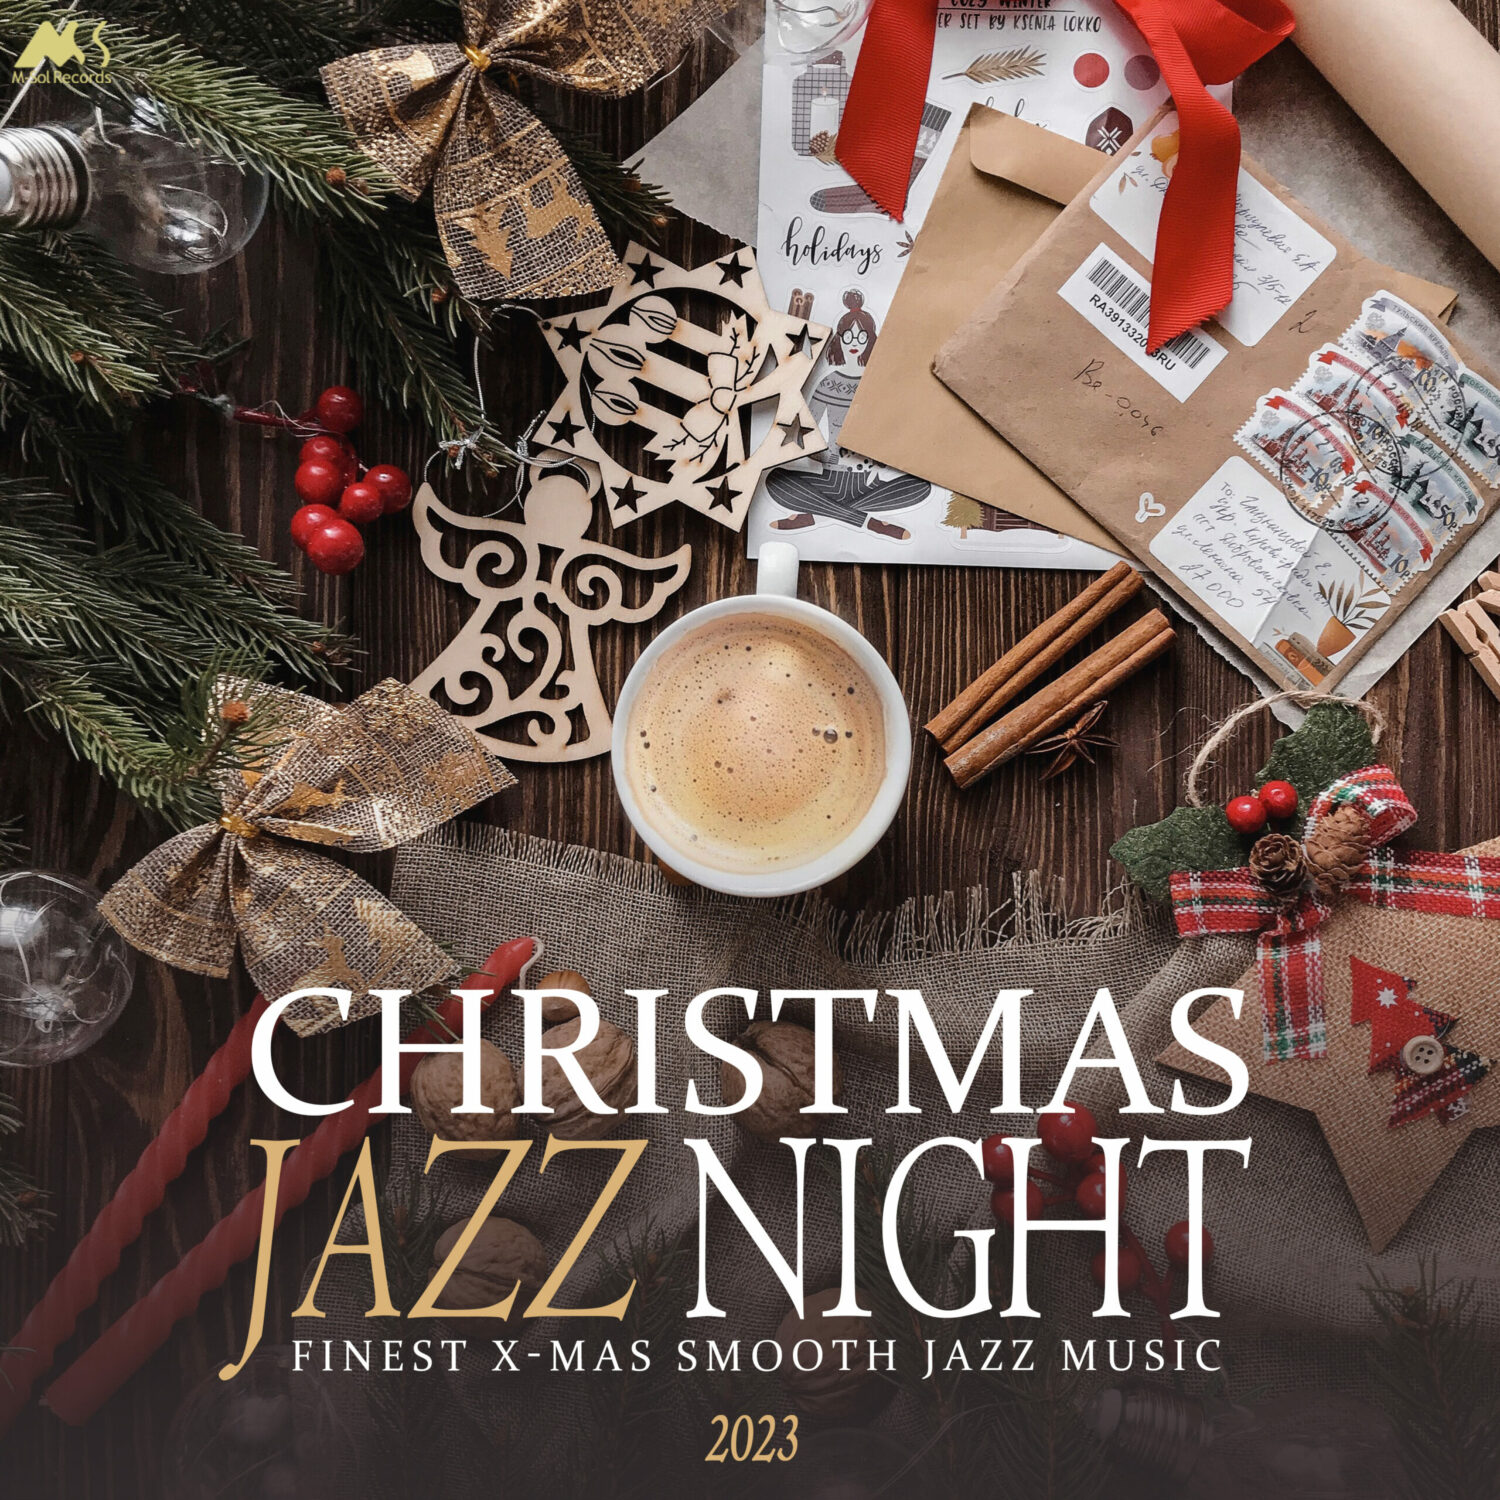 Christmas Jazz Night 2023 Finest XMas Smooth Jazz Music